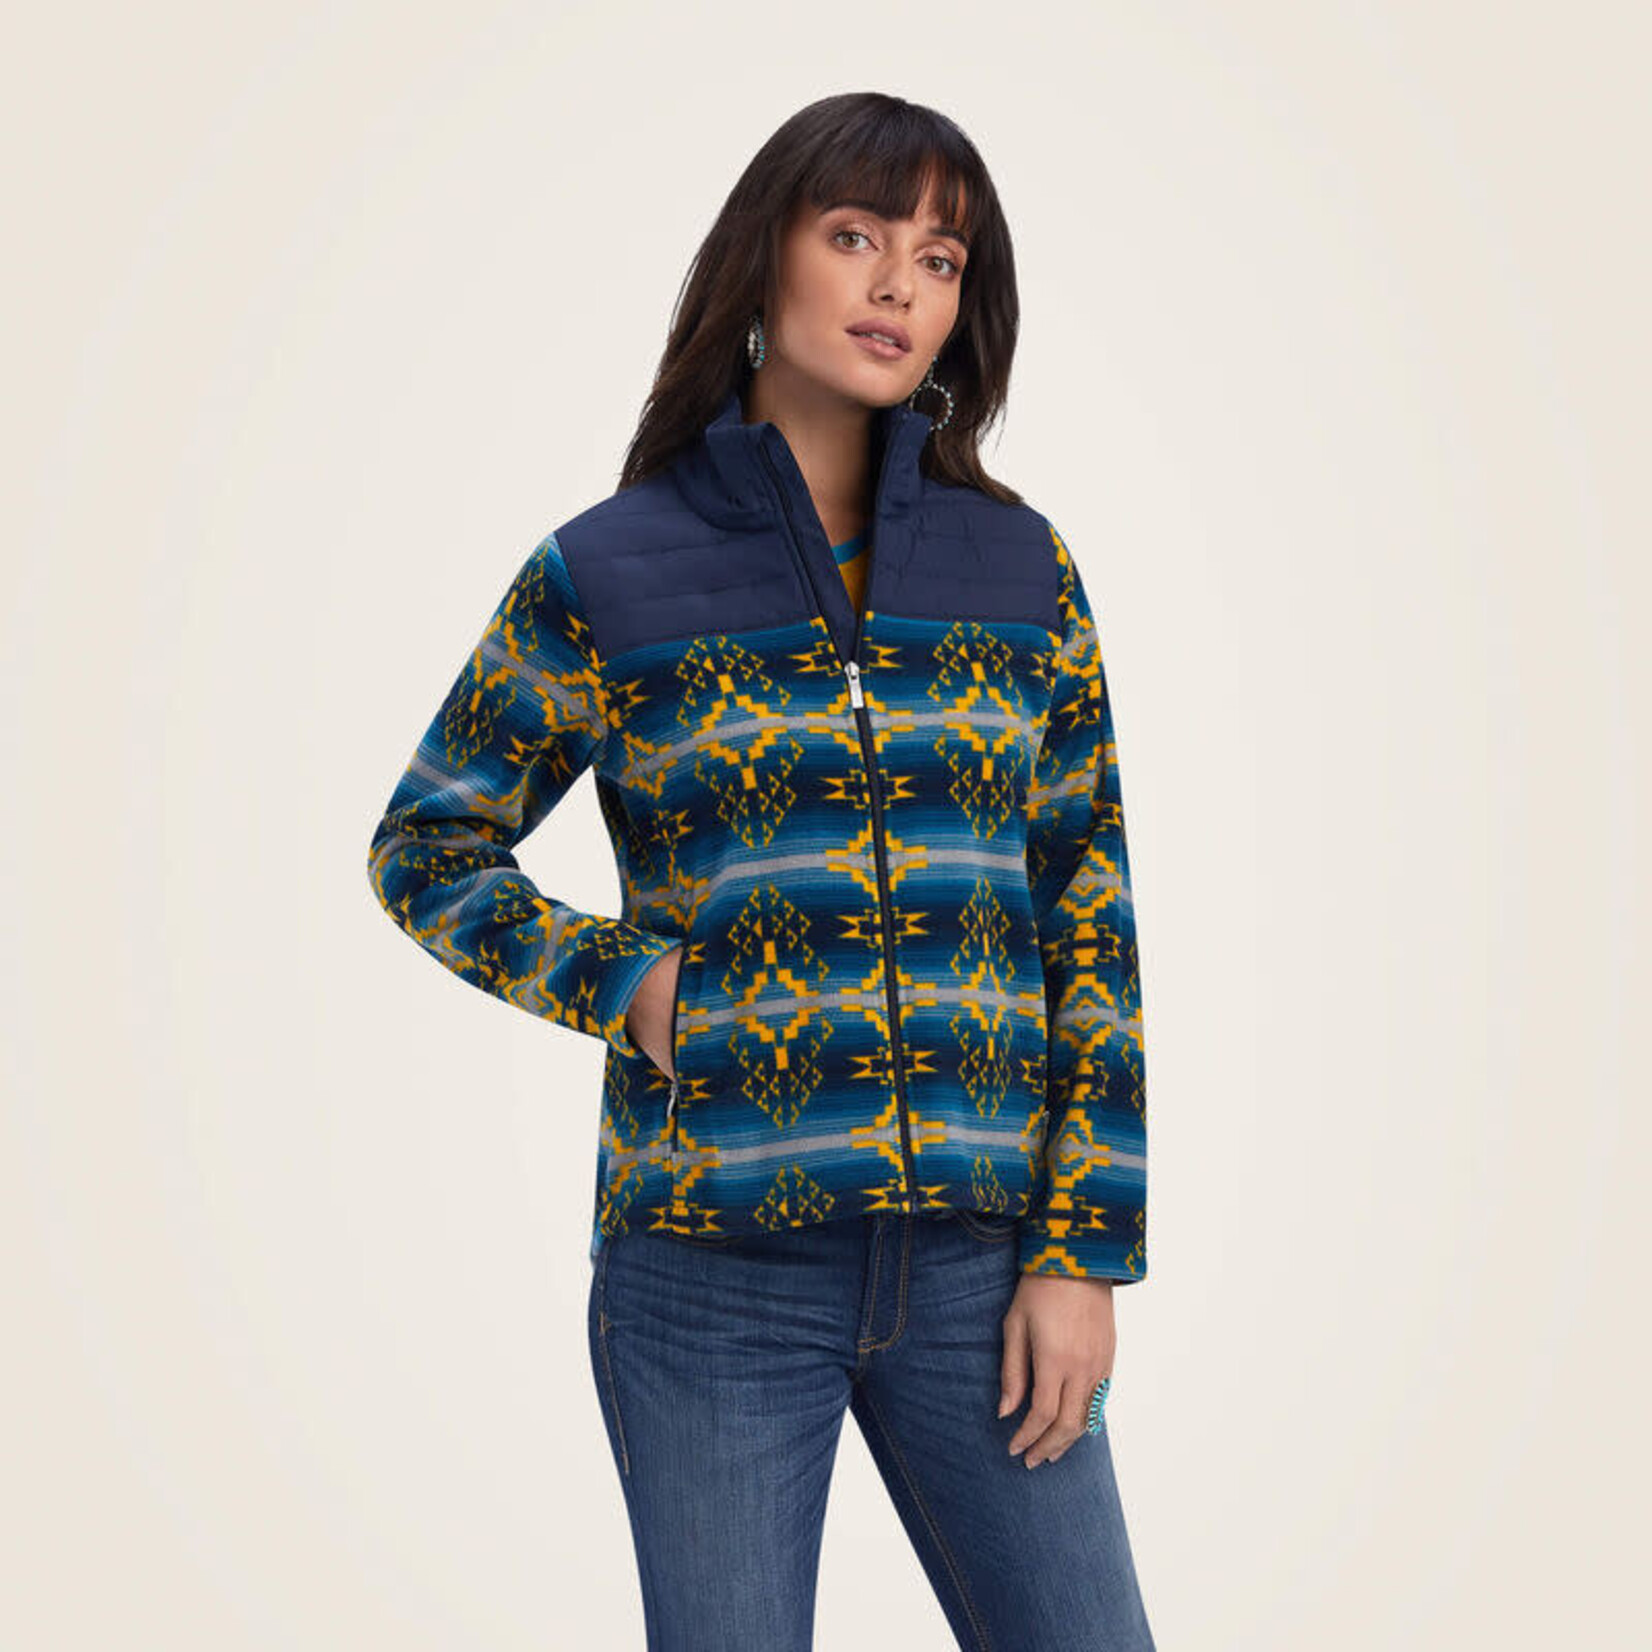 Ariat Ariat 10041818 Women's Prescott Fleece Jacket Navy Sonoran Print